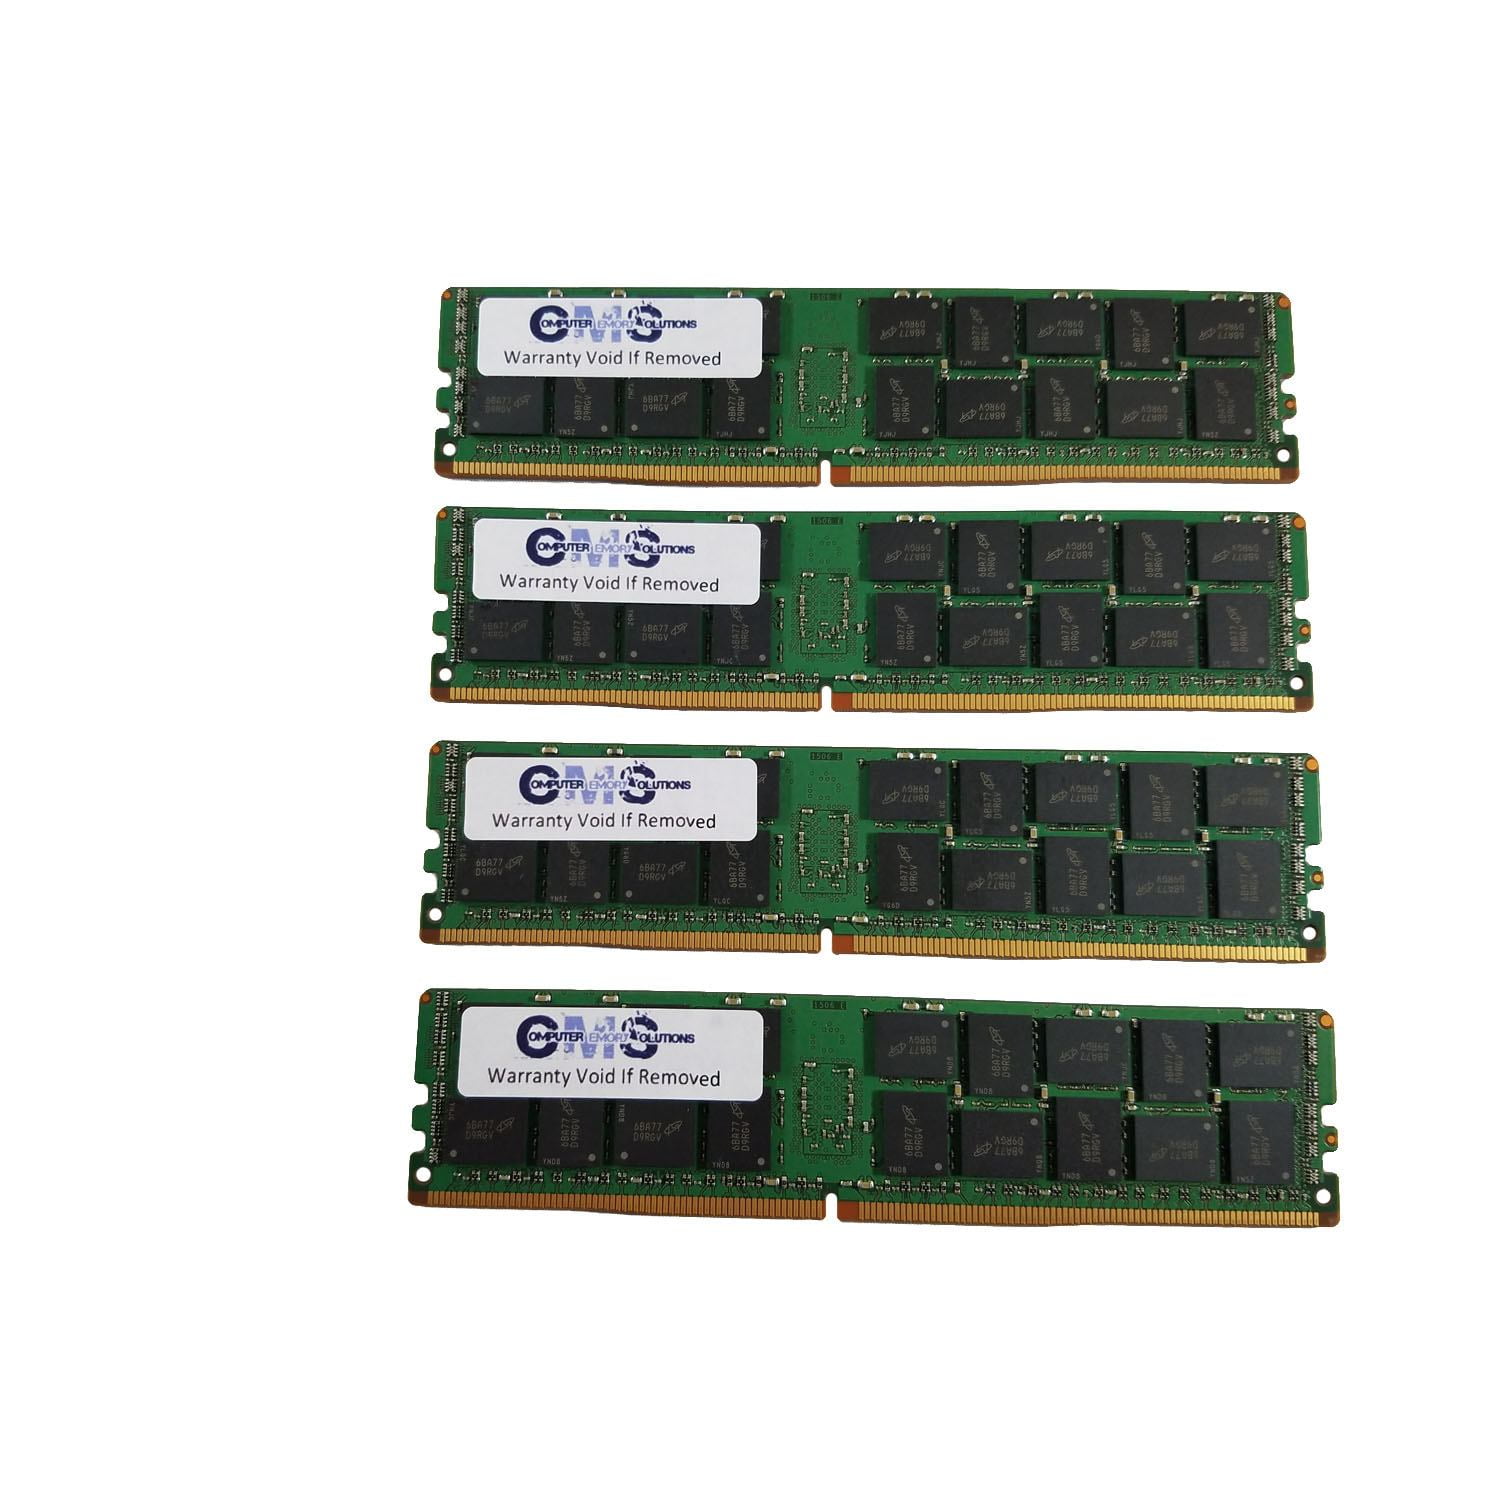 Cirkus Forsendelse indendørs CMS 128GB (4X32GB) DDR4 19200 2400MHZ ECC REGISTERED DIMM Memory Ram  Compatible with Gigabyte Server R150-T60, R150-T61, R150-T62, R150-T63 only  - D15 - Walmart.com